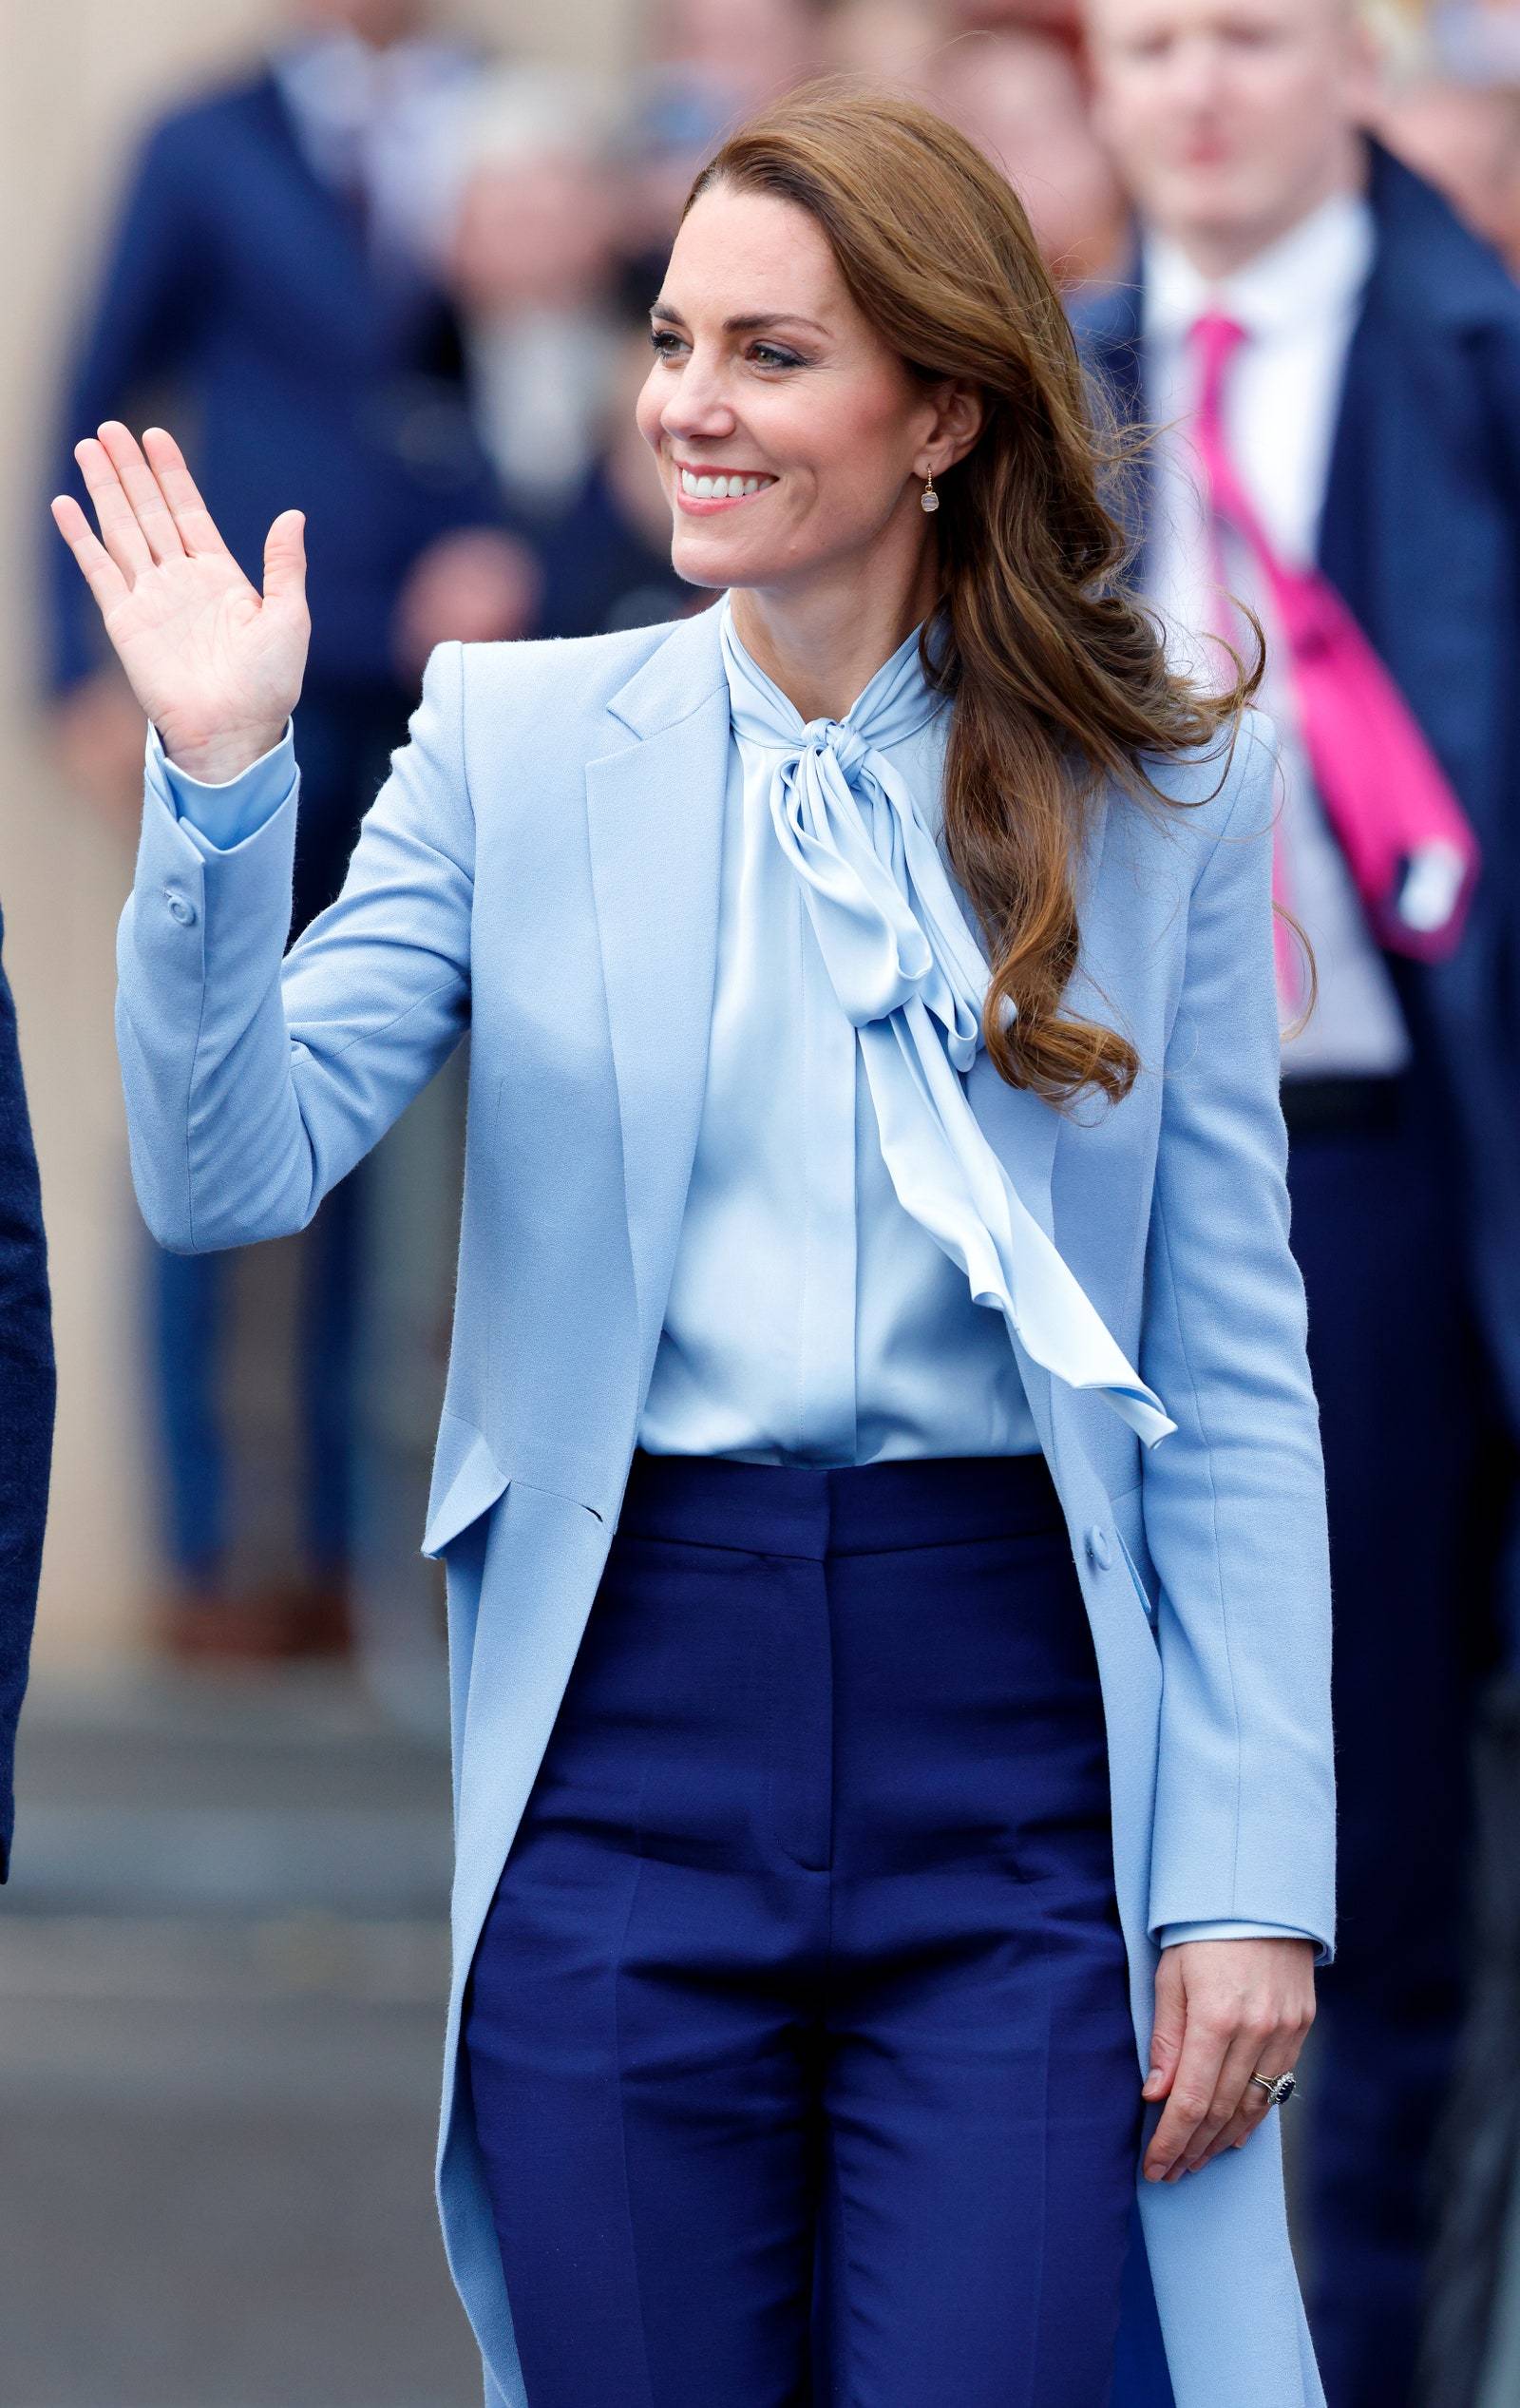 Bluzka z kokardą wiązaną pod szyją wciąż jest podstawą garderoby księżnej Kate (Fot. Getty Images)